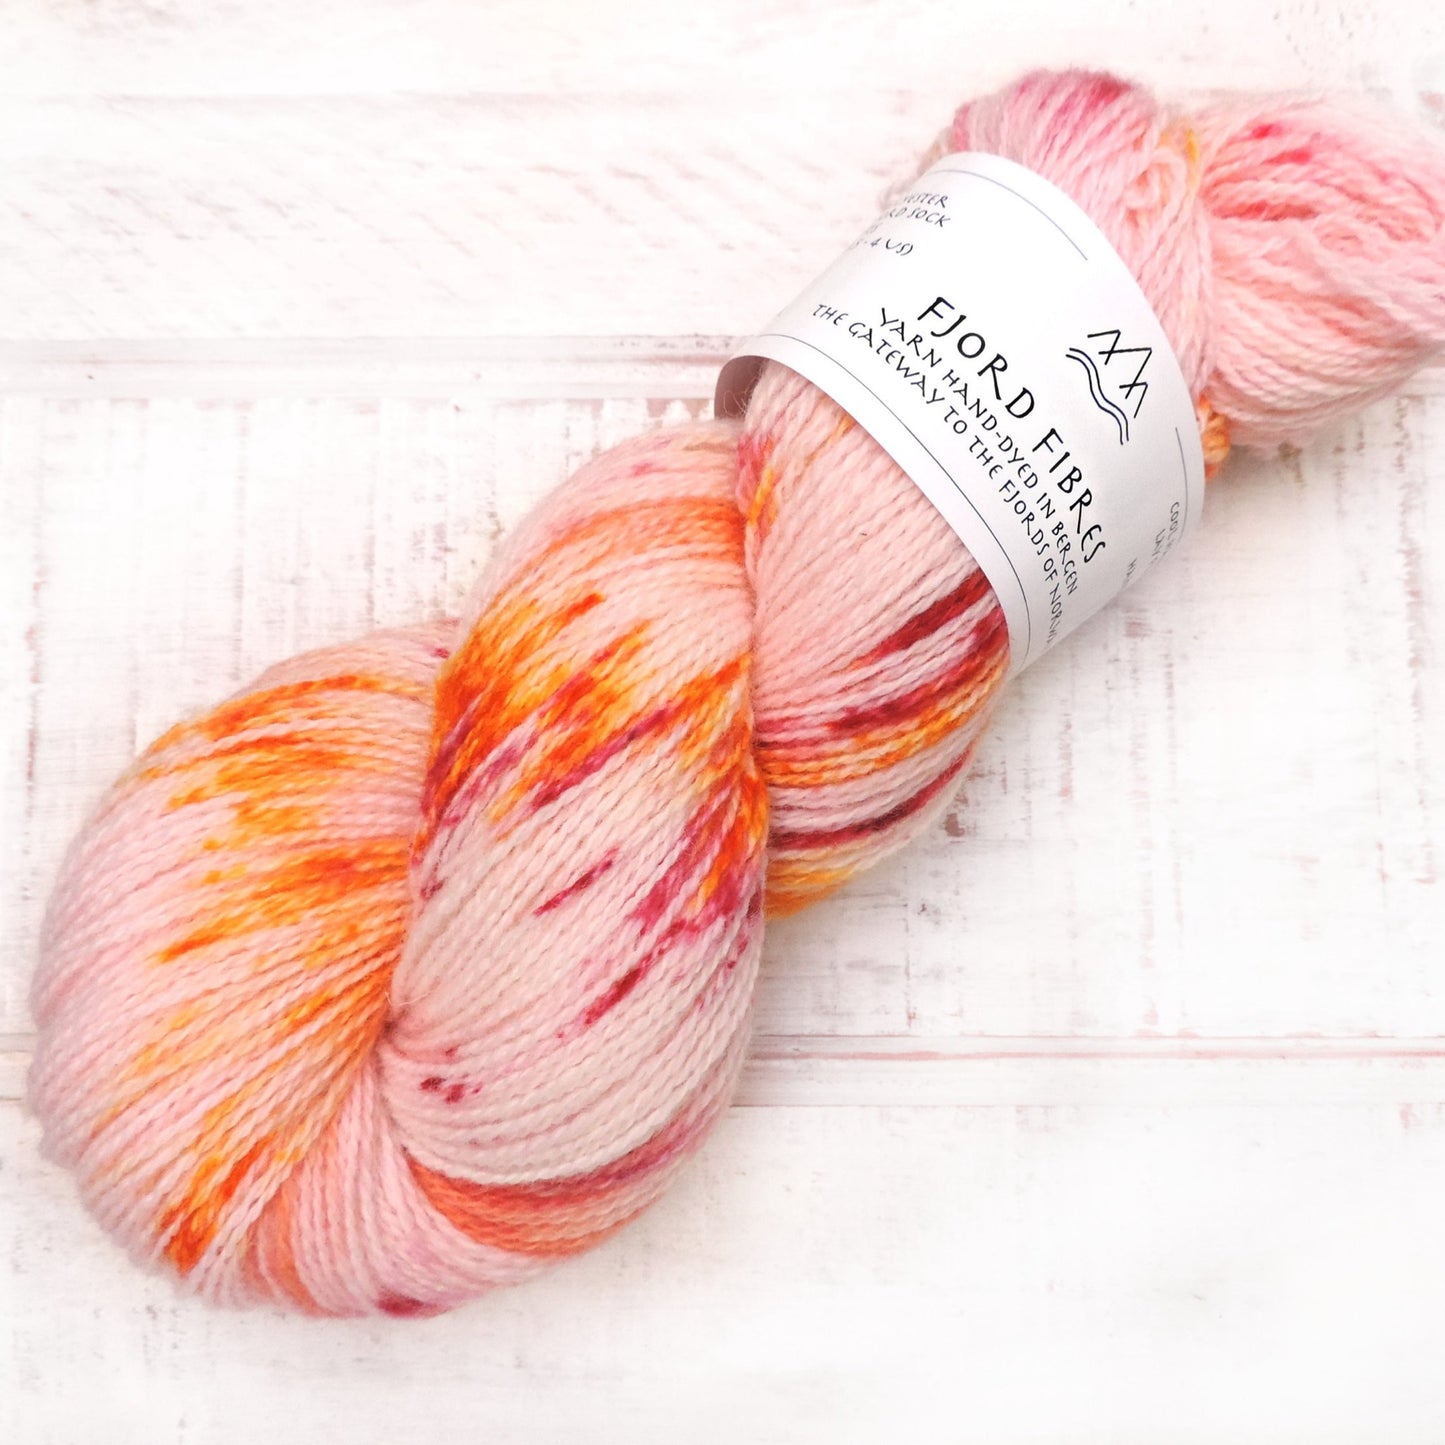 Sherbet Fizz - Trollfjord Sock - Hand Dyed Yarn - Variegated Yarn